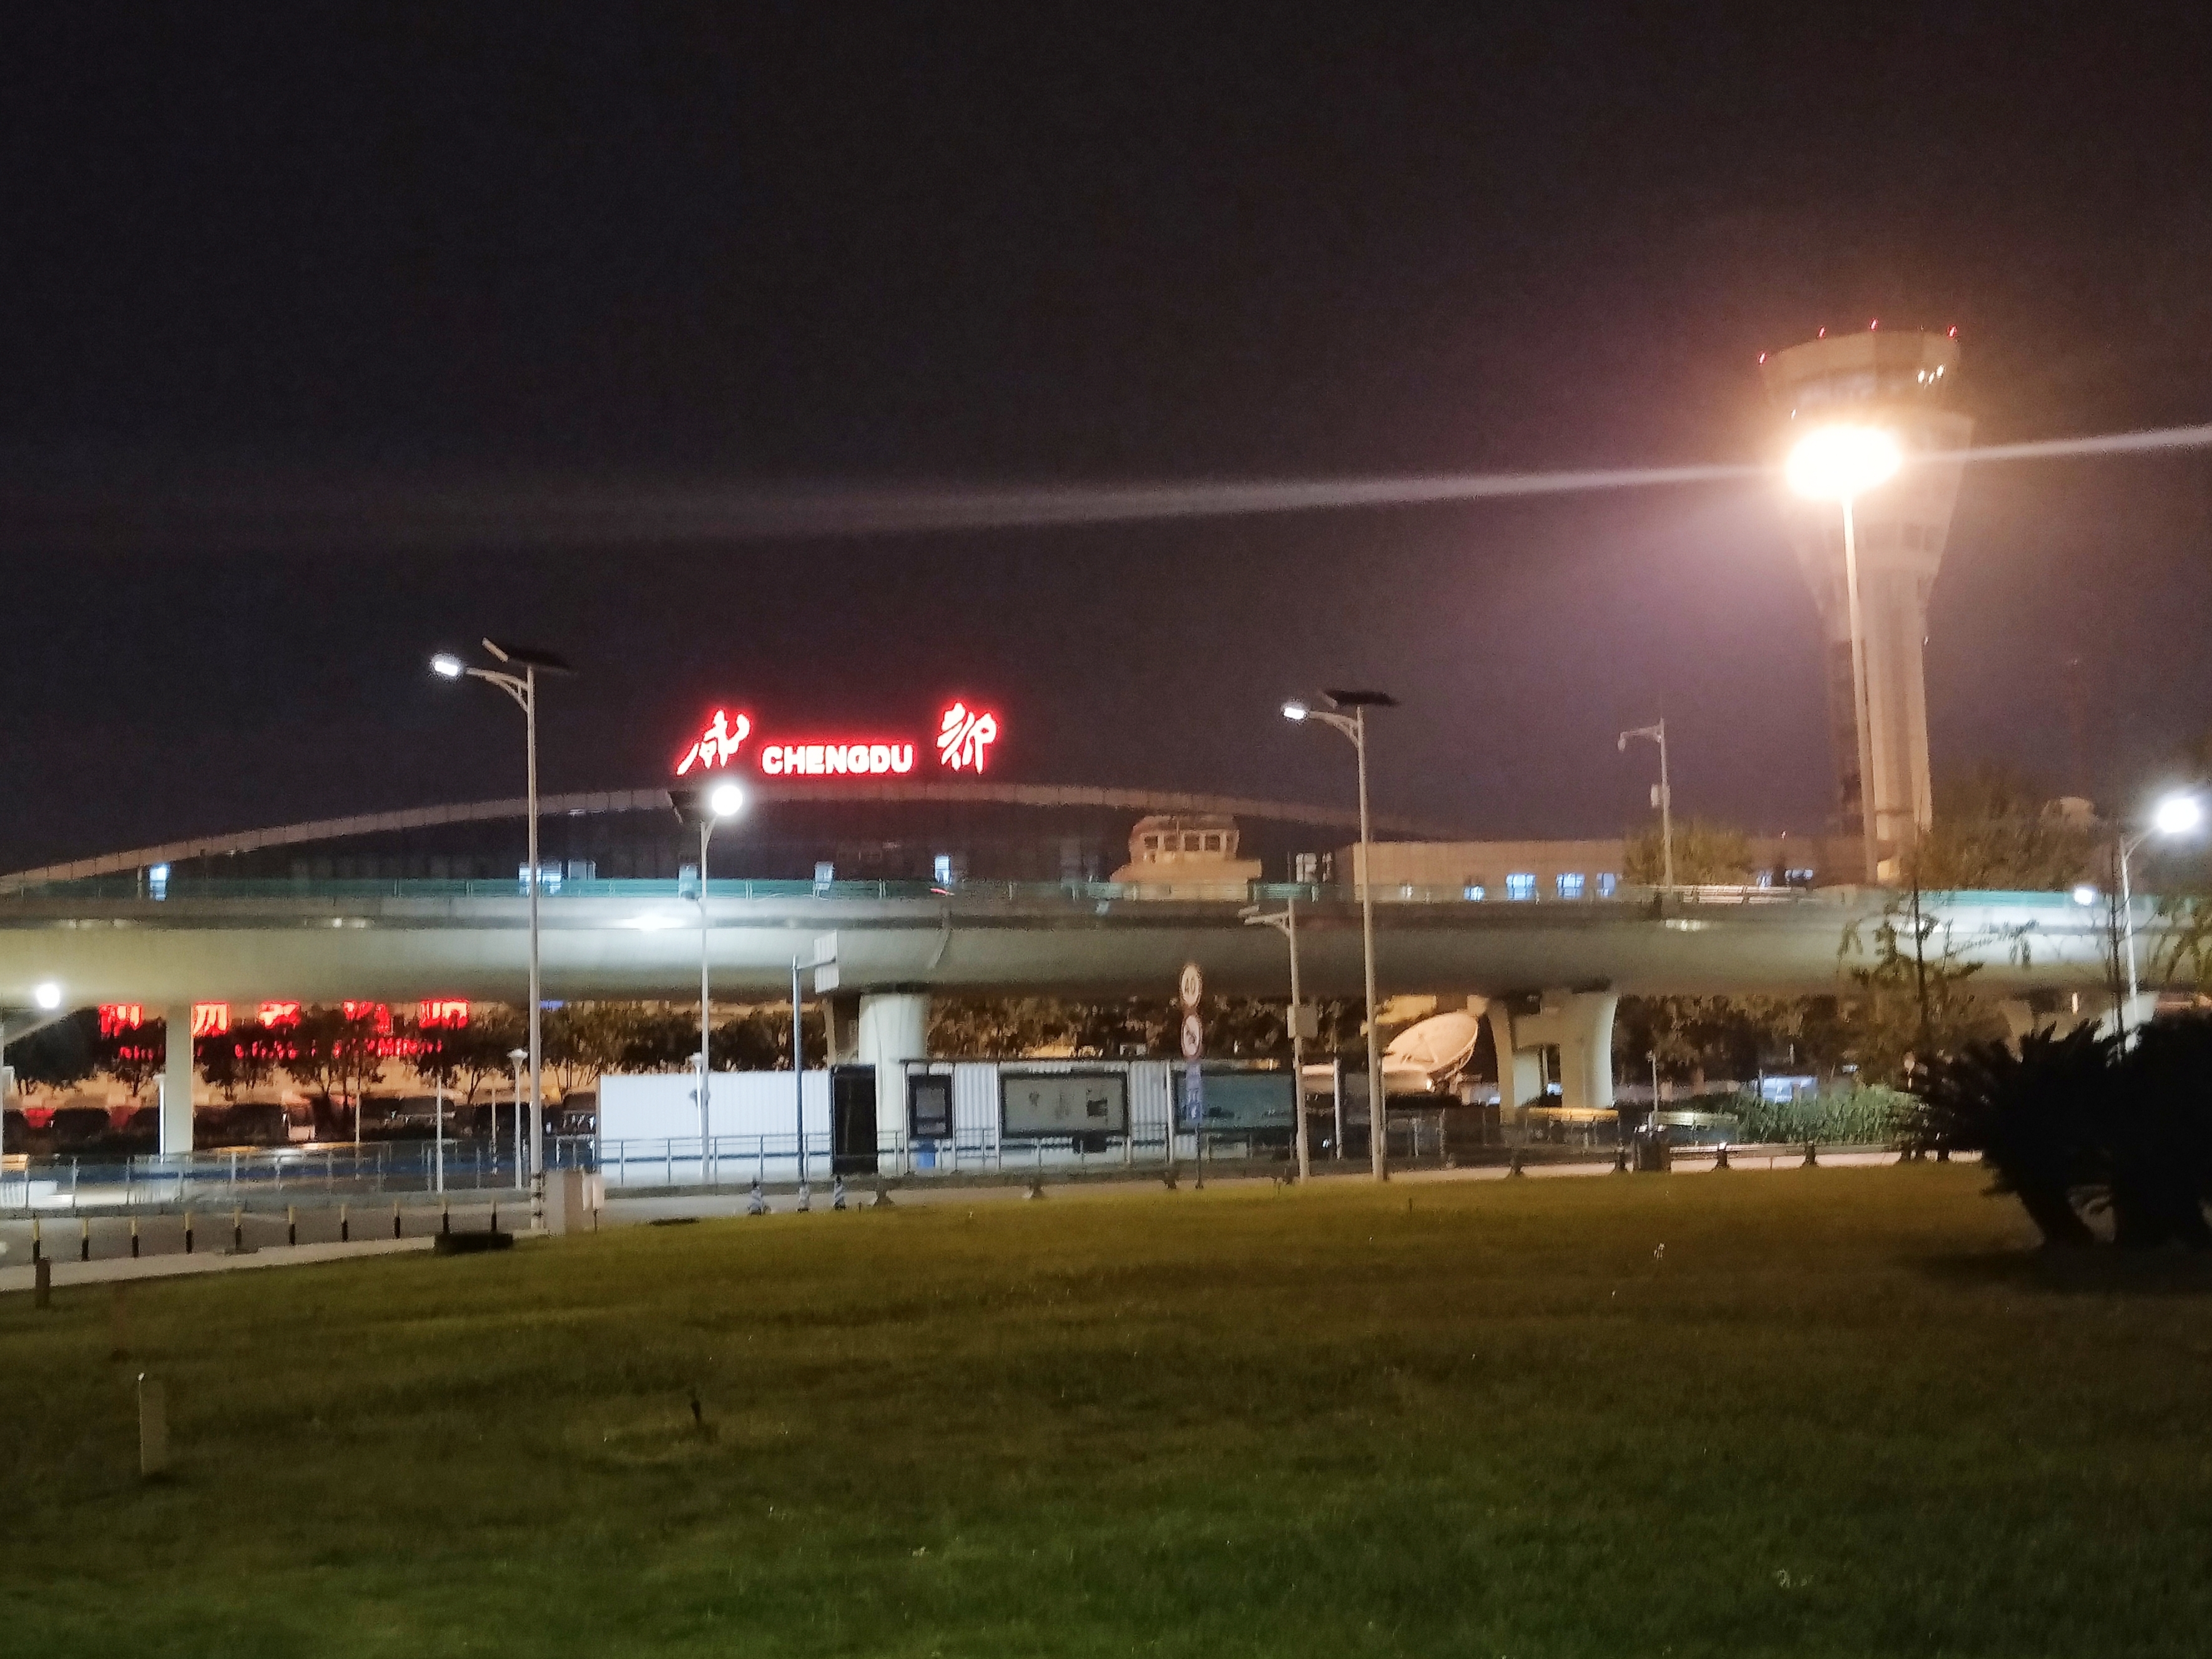 成都机场照片 夜景图片